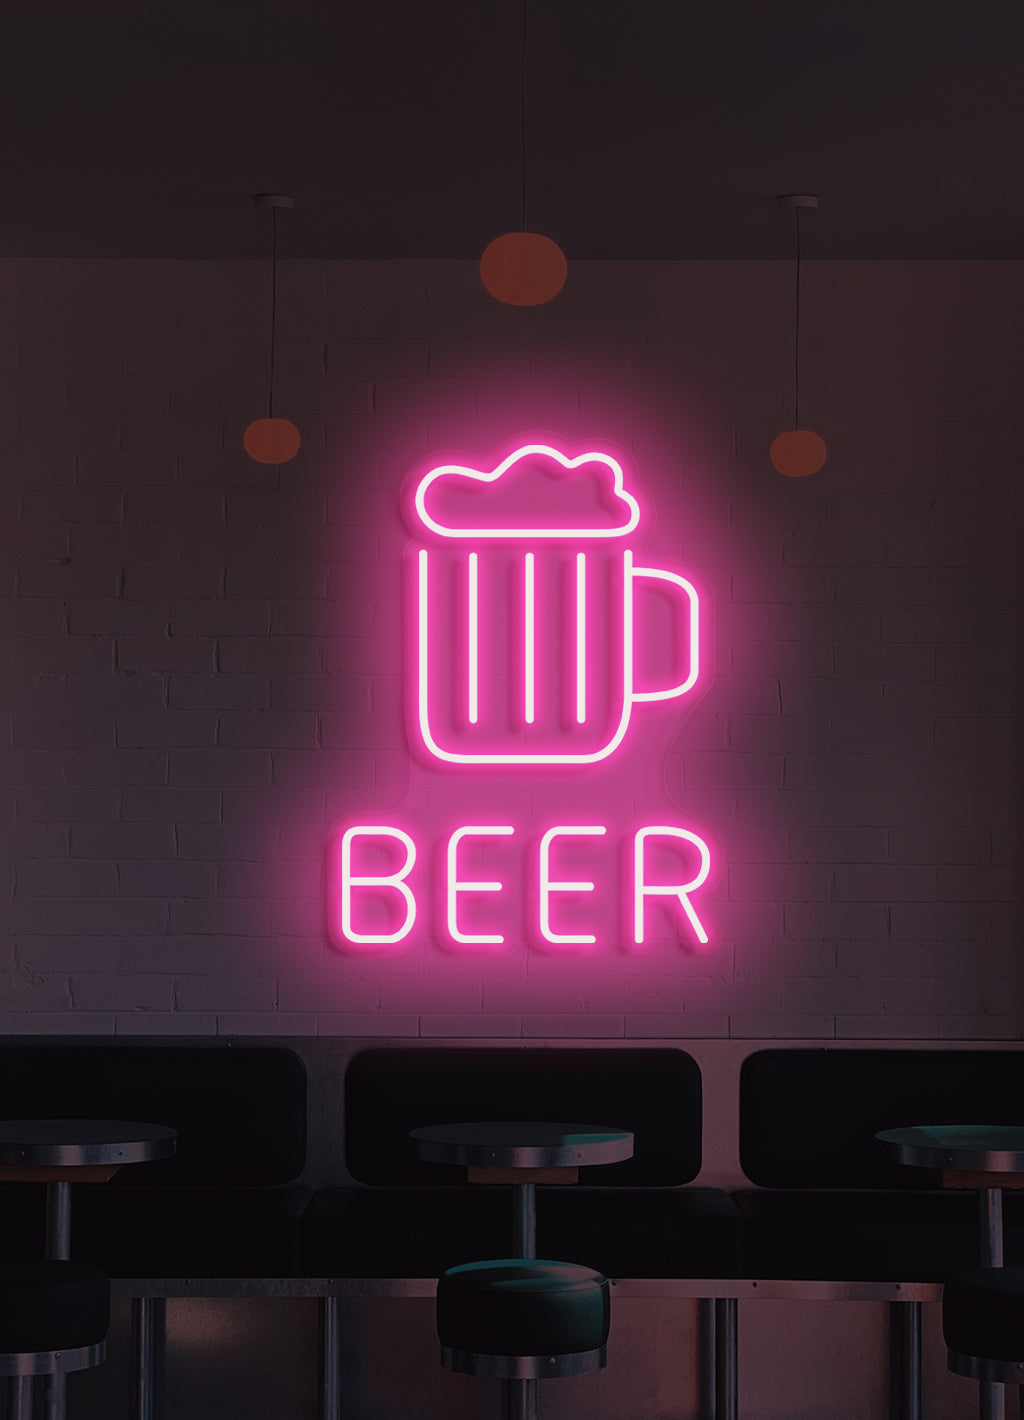 Beer - LED Neon skilt